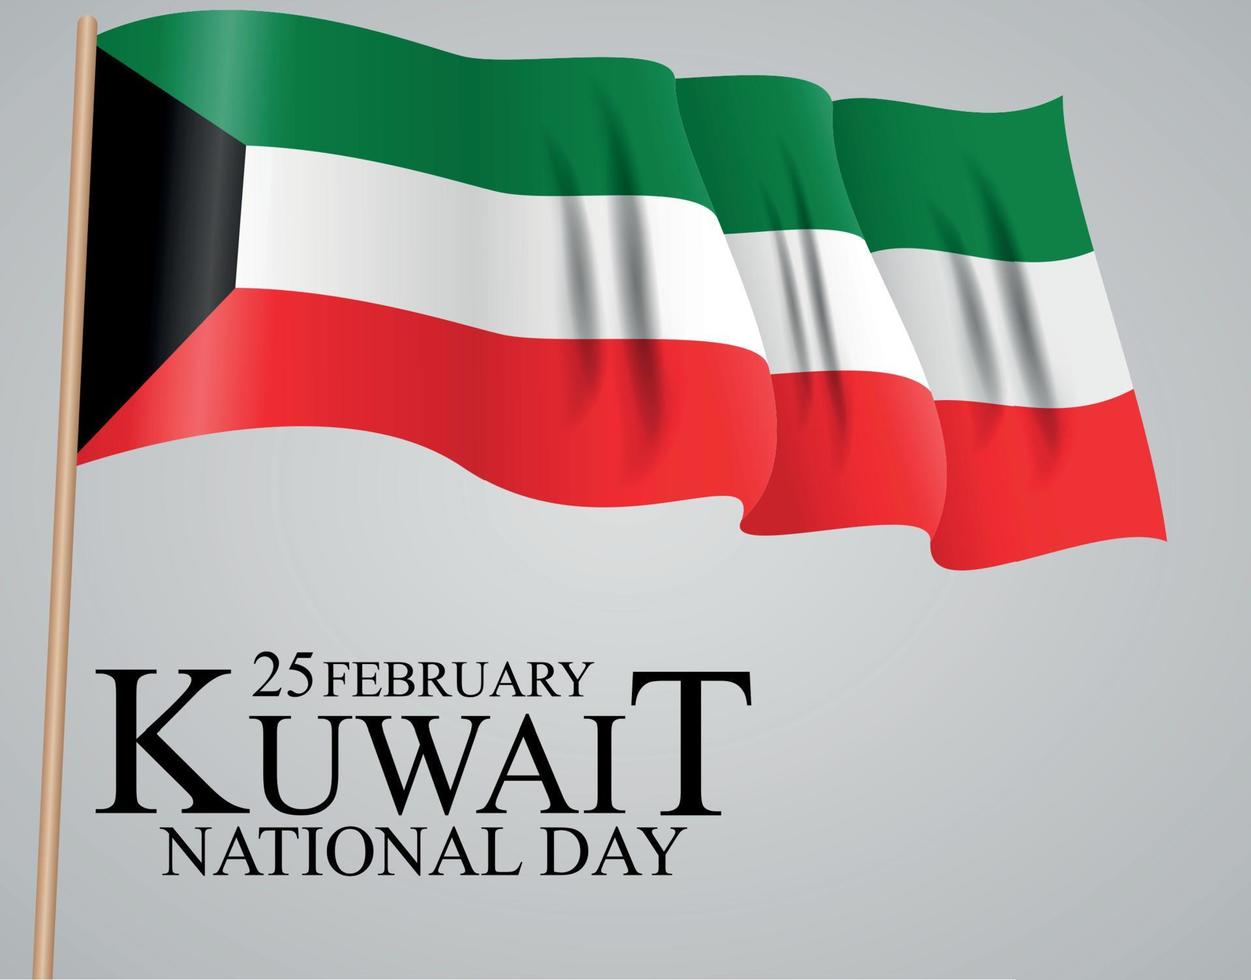 25 februari Kuwait nationaldag bakgrund malldesign för kort, banderoll, affisch eller flygblad. vektor illustration